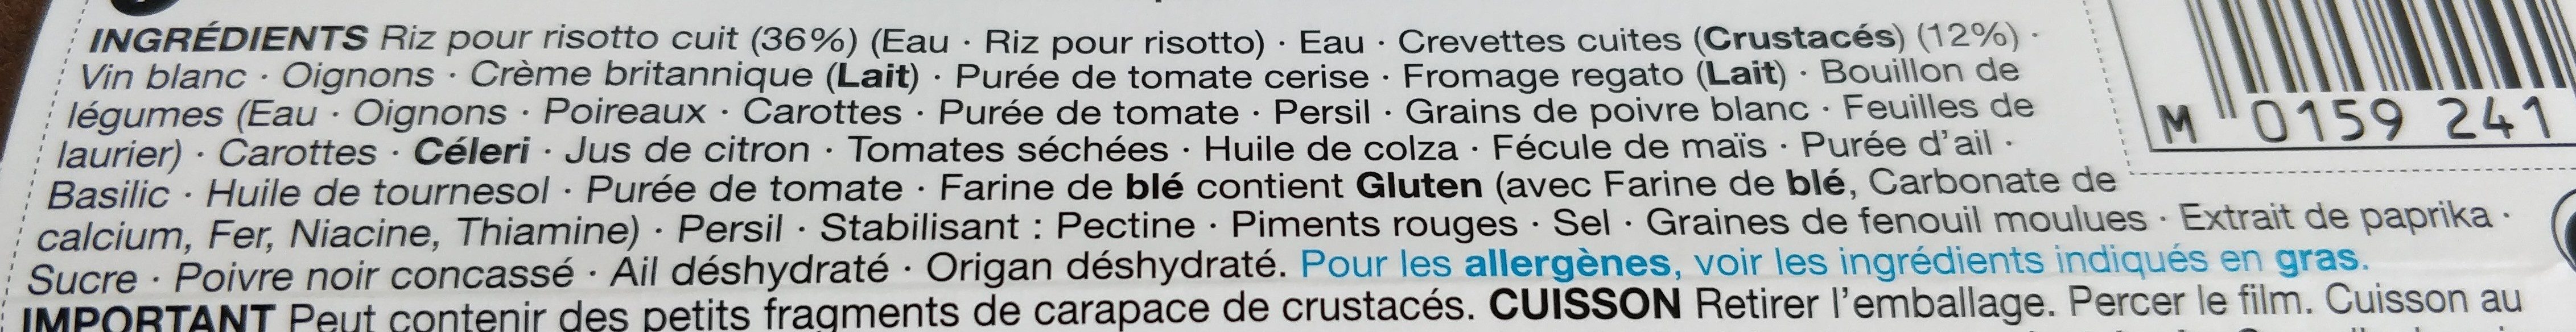 Risotto Aux Crevettes - Ingredients - fr